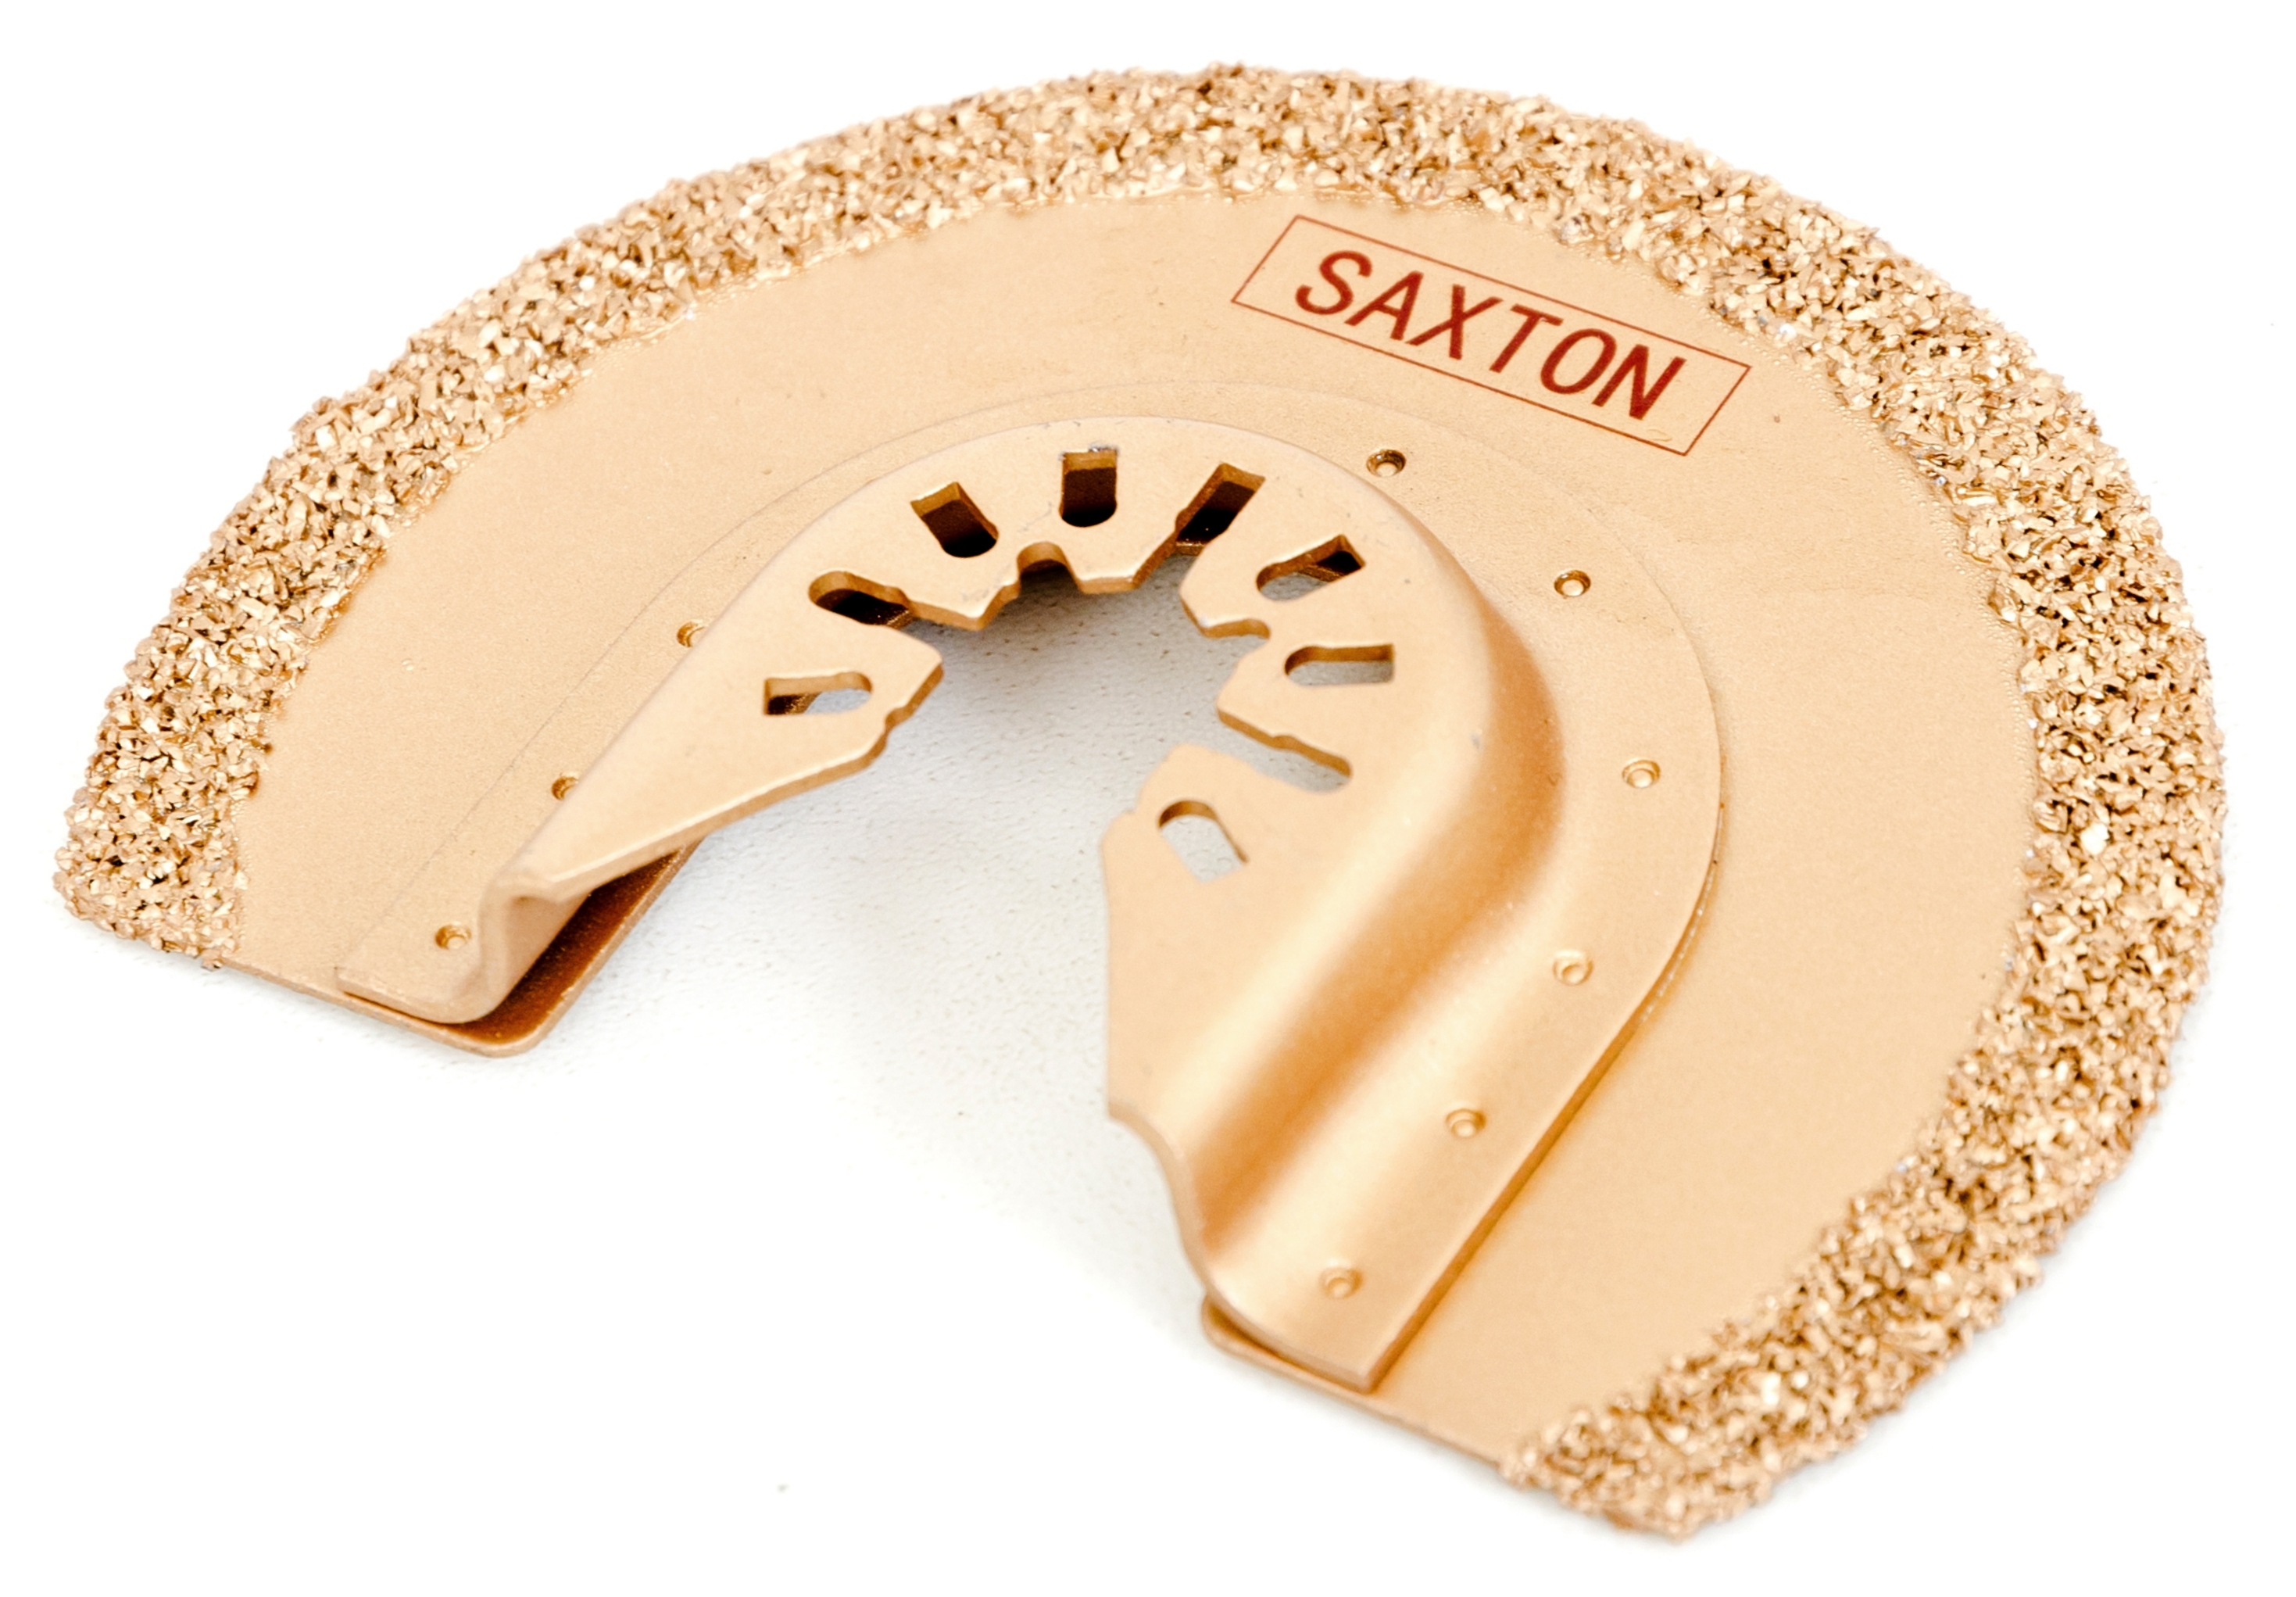 Saxton 90mm Carbide Blade Compatible with Dewalt Stanley Wolf Black & Decker Oscillating Multitools